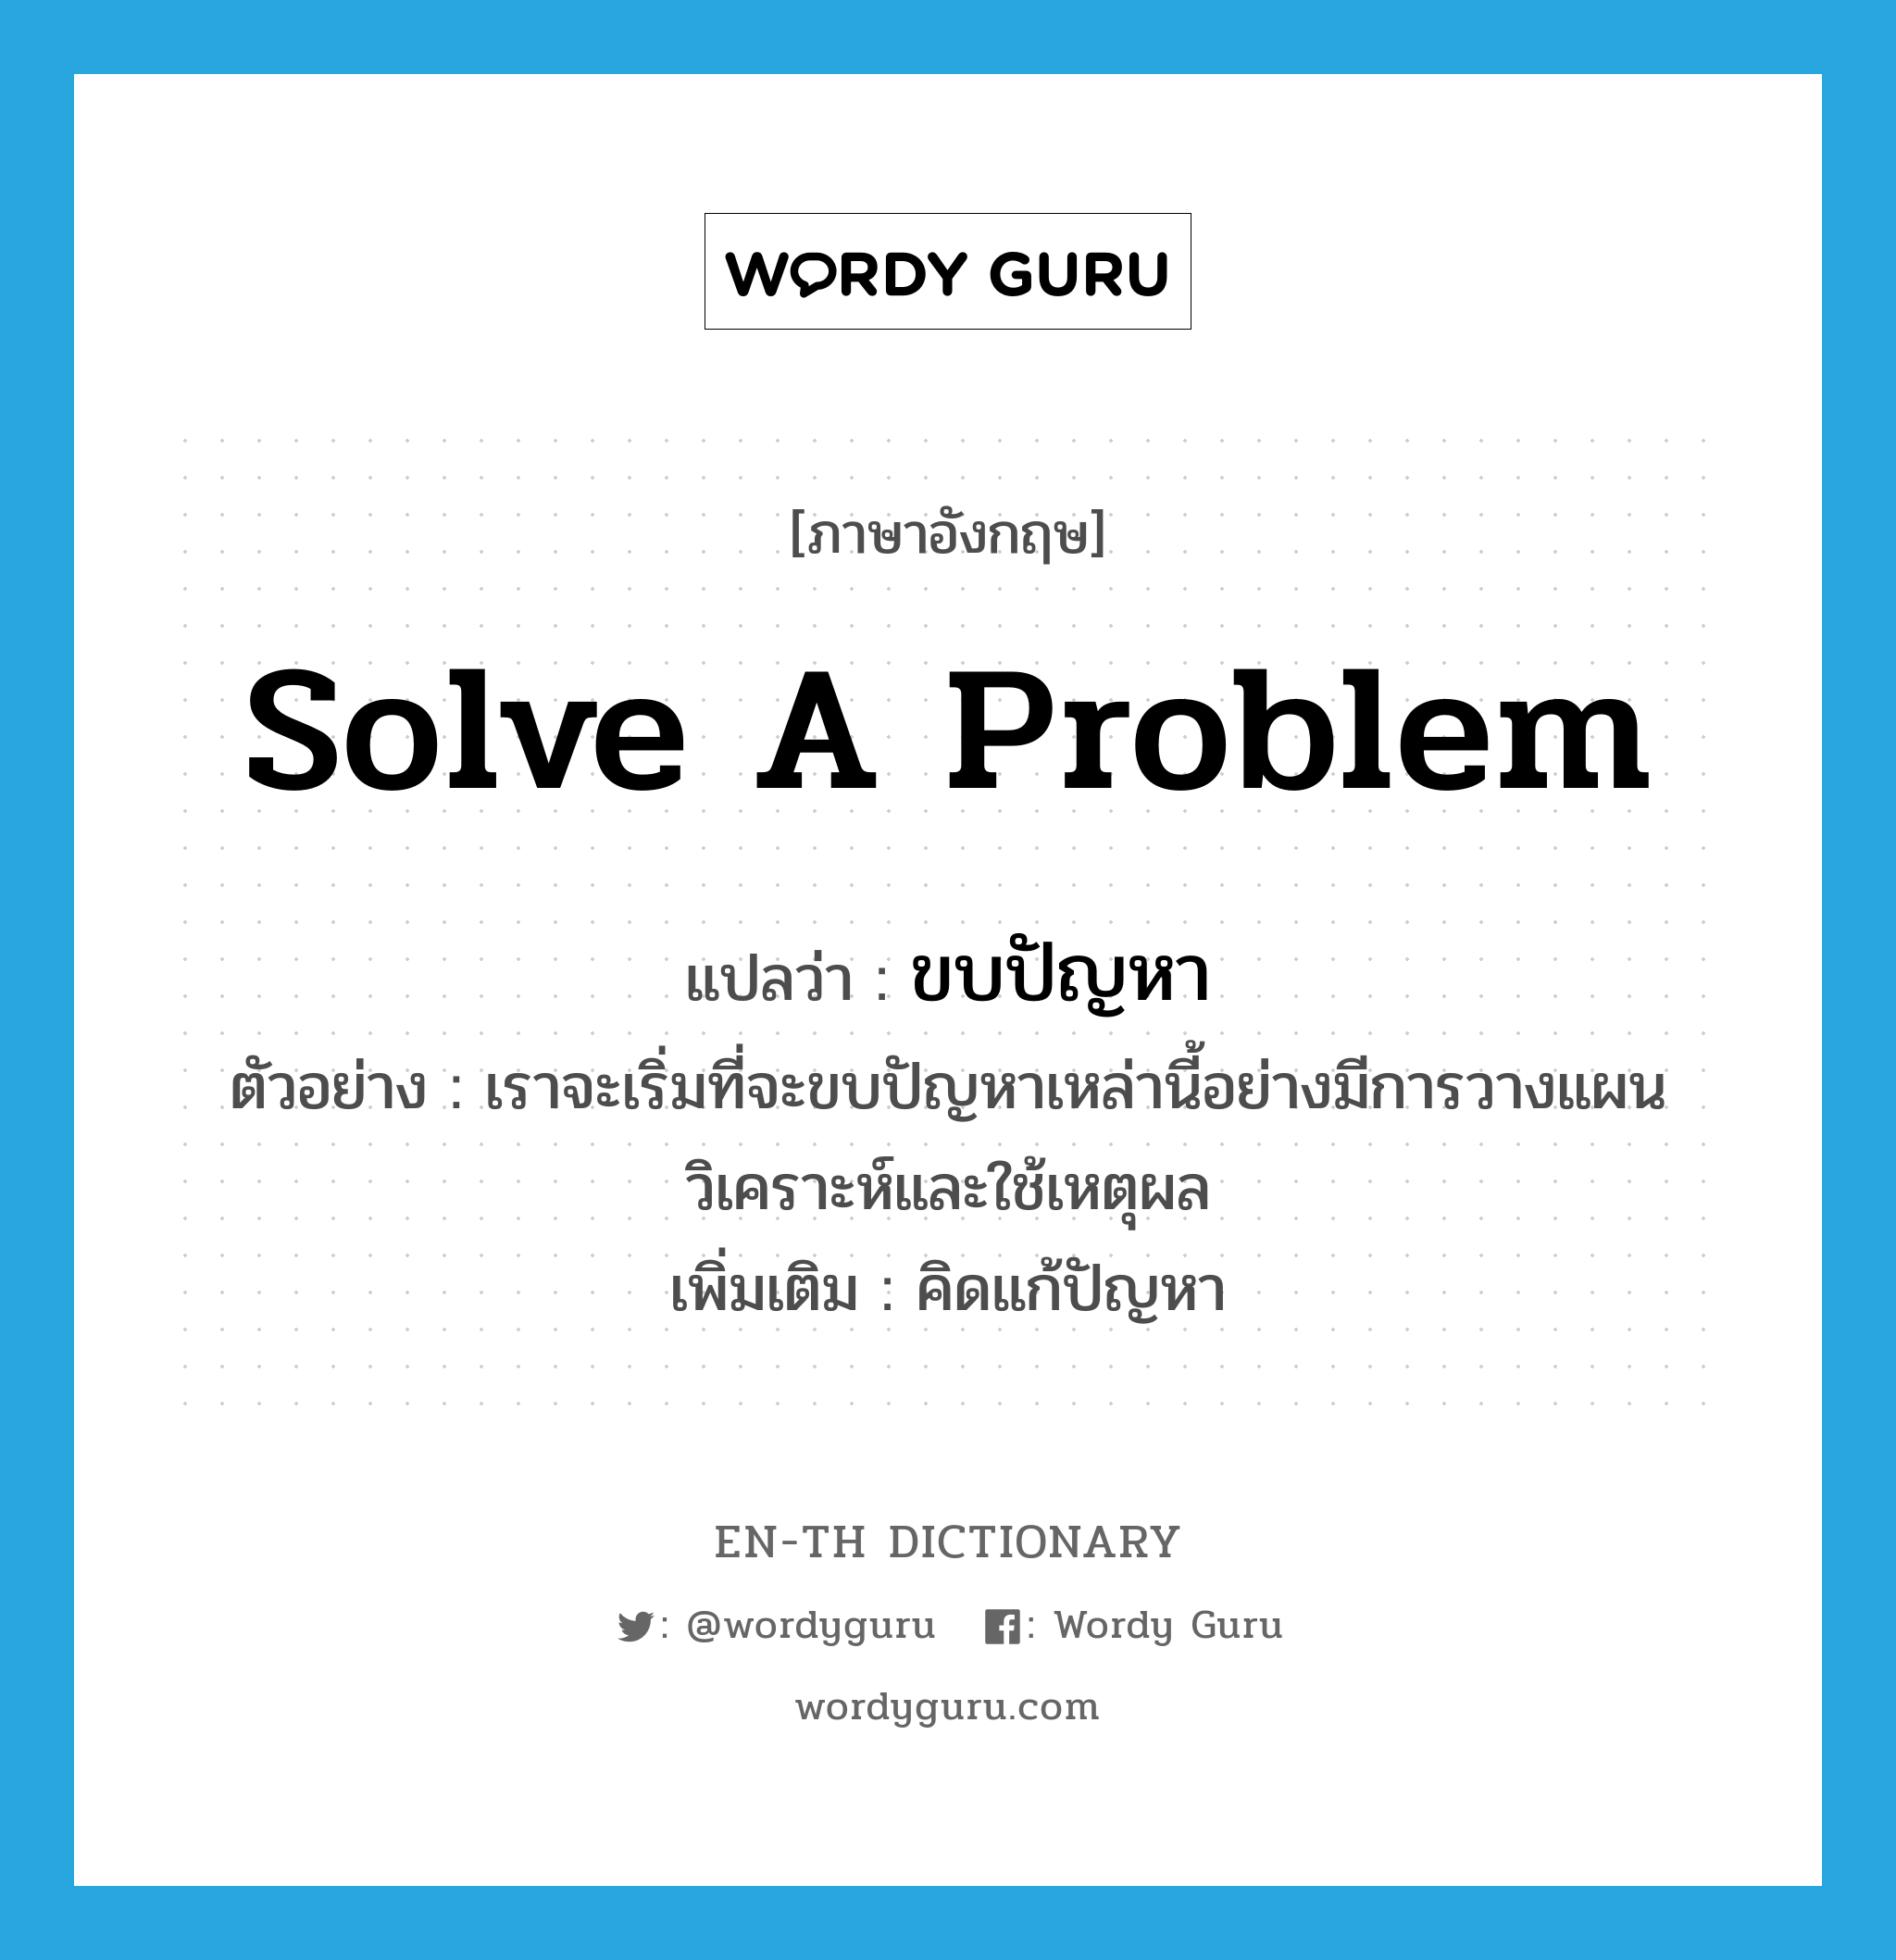 solve a problem แปลว่า?, คำศัพท์ภาษาอังกฤษ solve a problem แปลว่า ขบปัญหา ประเภท V ตัวอย่าง เราจะเริ่มที่จะขบปัญหาเหล่านี้อย่างมีการวางแผนวิเคราะห์และใช้เหตุผล เพิ่มเติม คิดแก้ปัญหา หมวด V